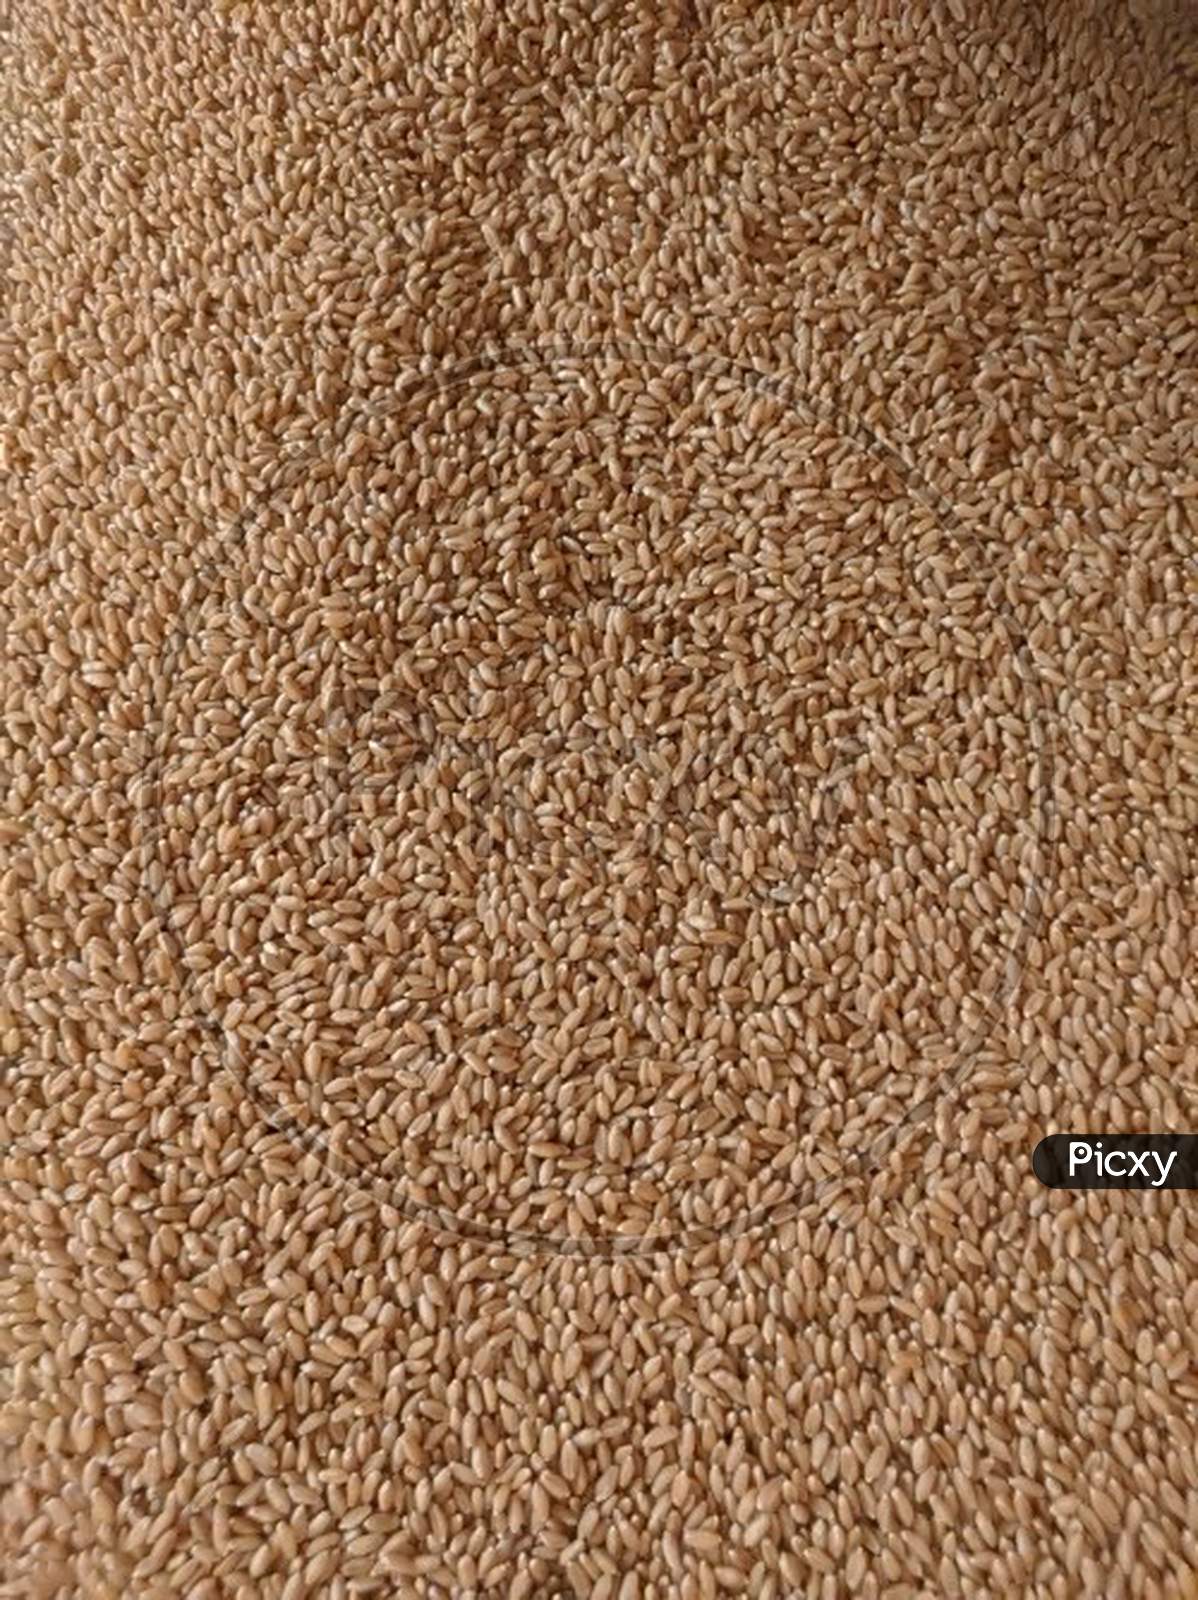 Wheat Grain Frame